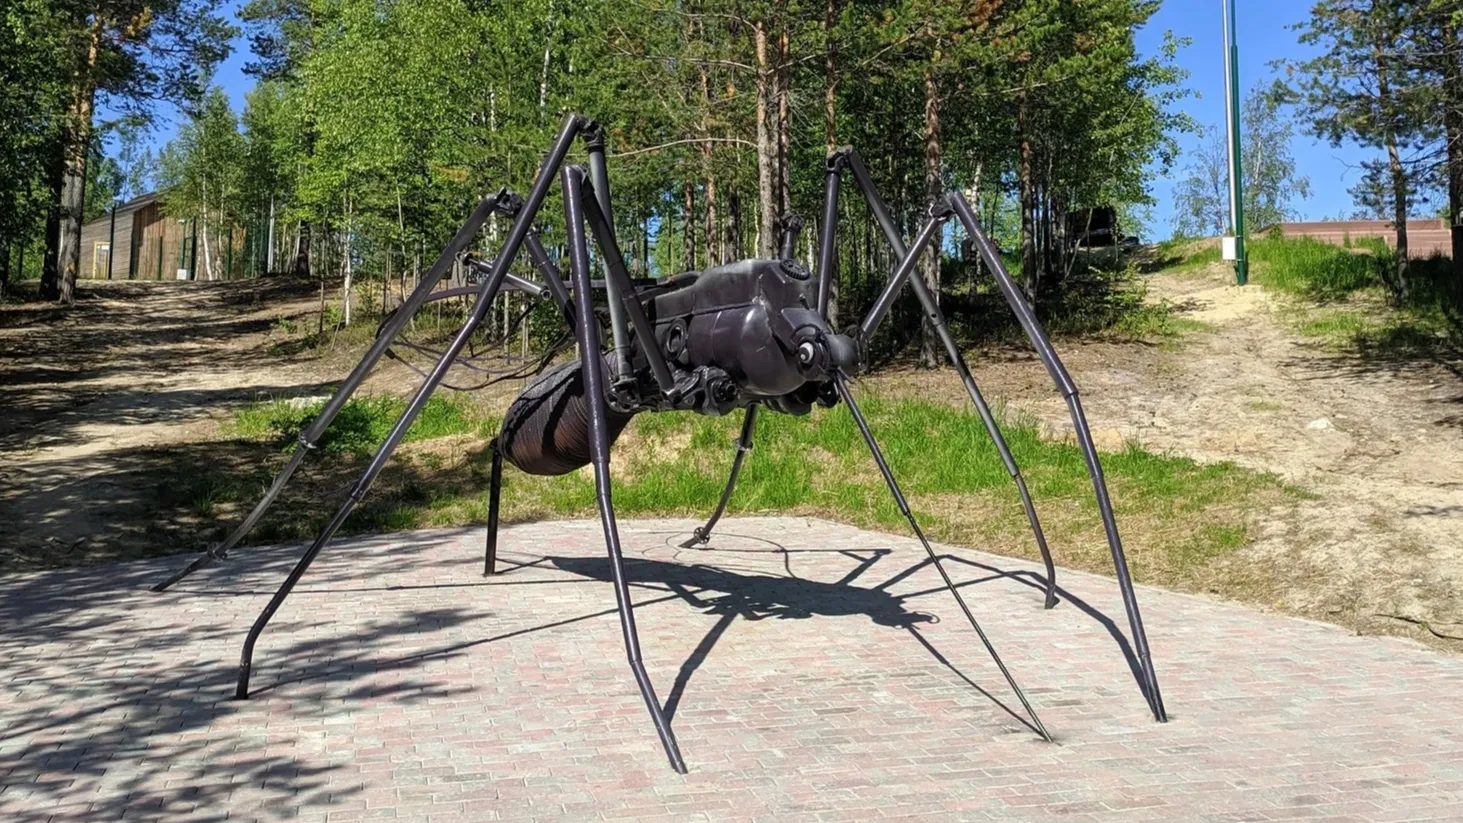 Памятник комару, установленный в Ноябрьске. Фото: lexosn / Shutterstock / Fotodom